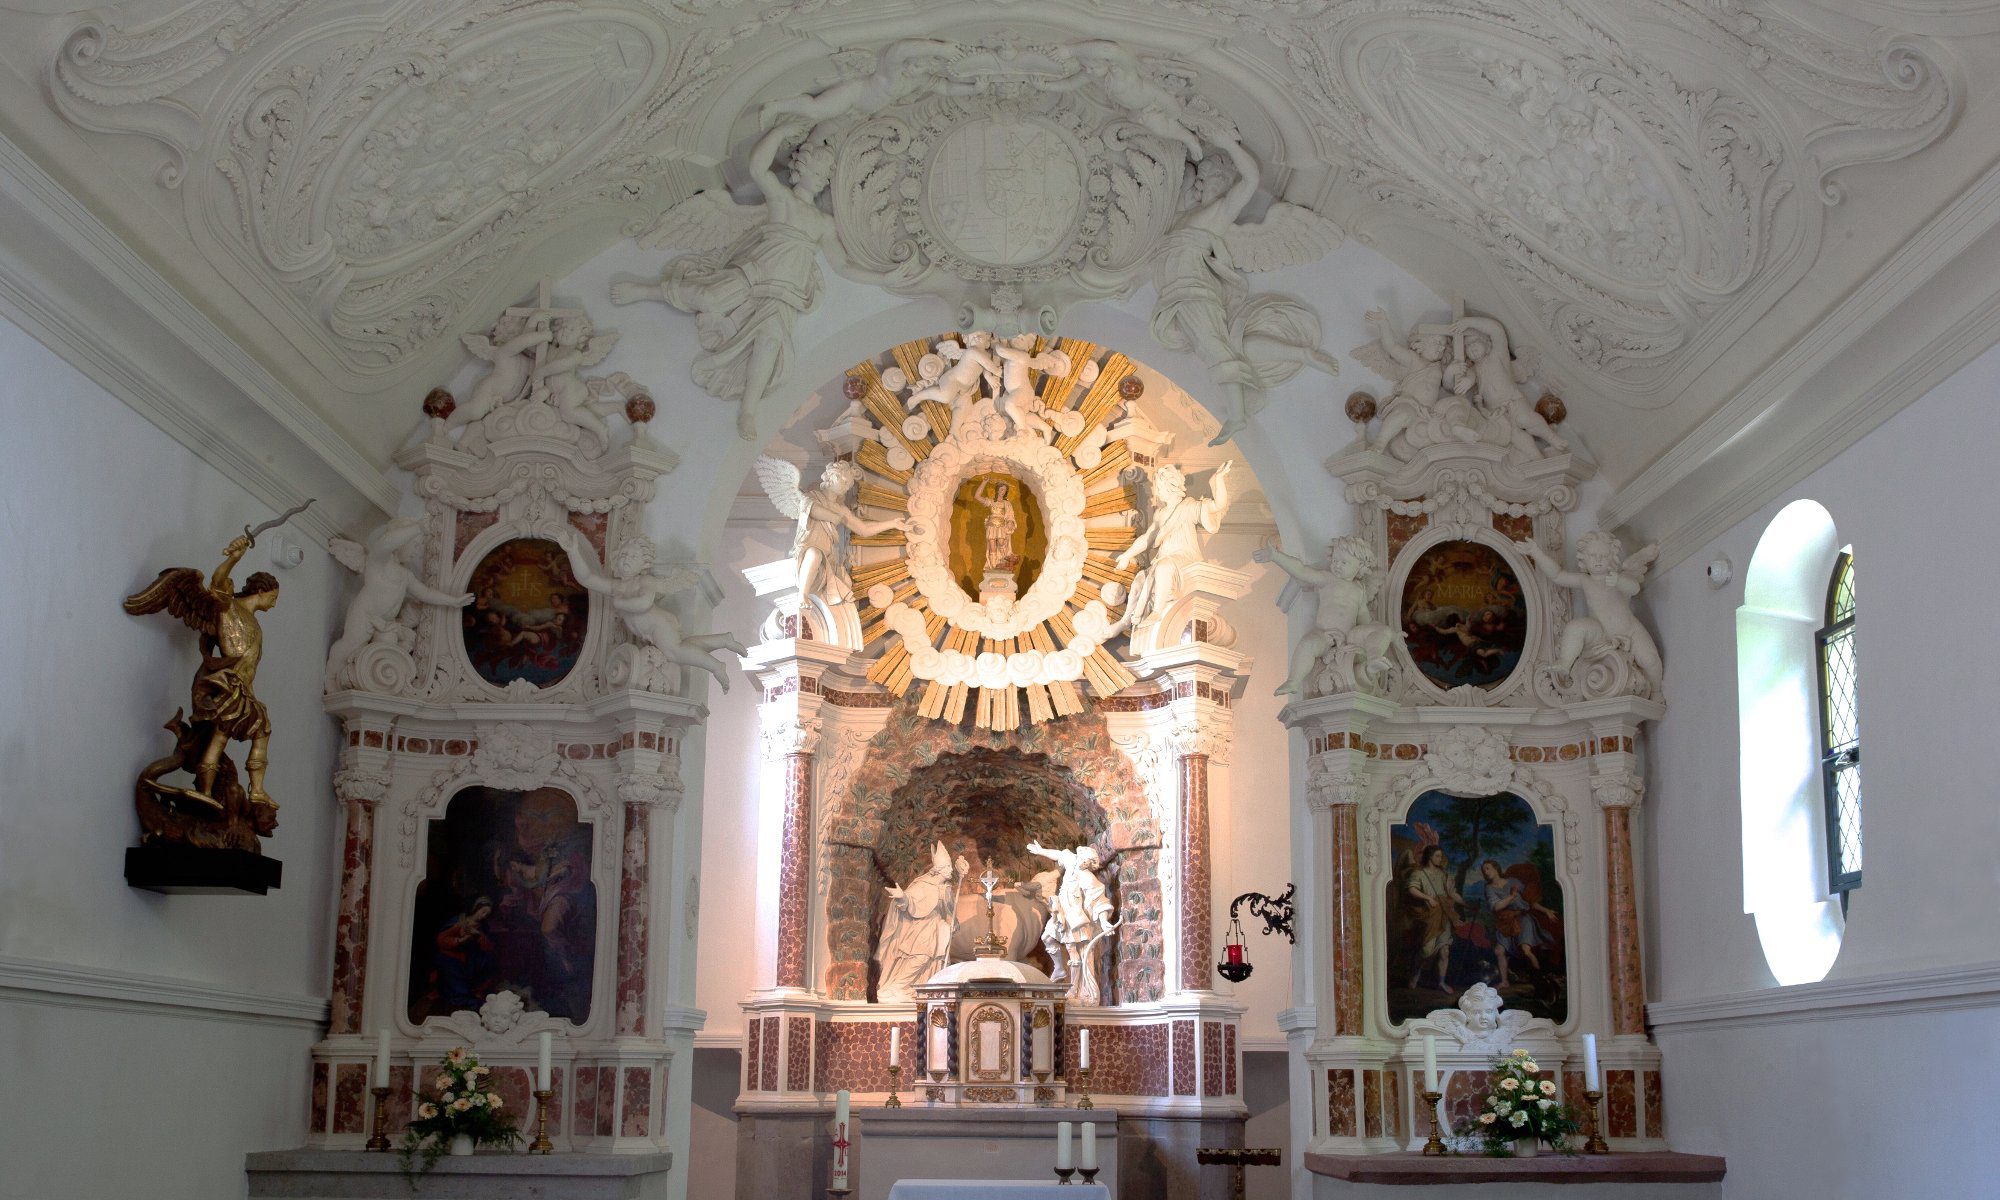 Förderverein Michaelskapelle zu Bad Godesberg e.V.